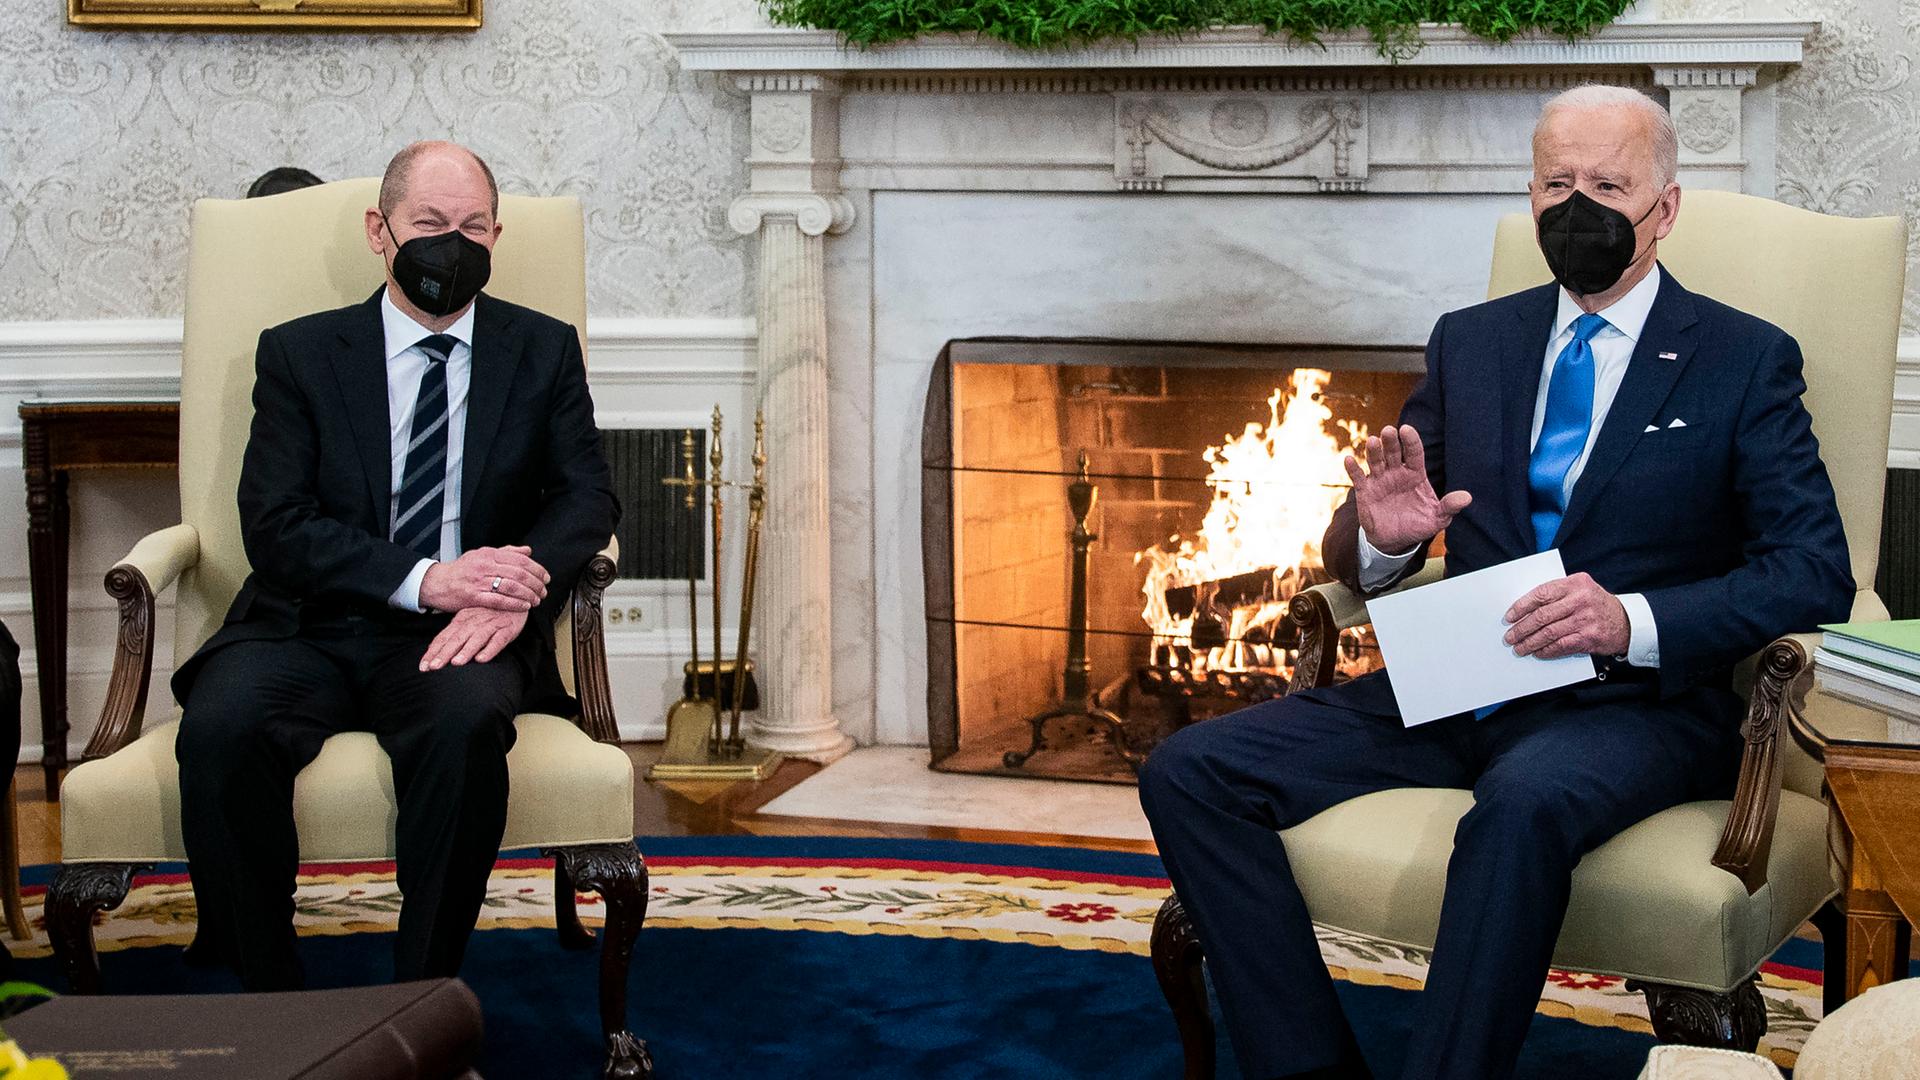 Bundes-Kanzler Olaf Scholz und US-Präsident Joe Biden vor dem brennenden Kamin bei einem Treffen im Weißen Haus in Washington. 